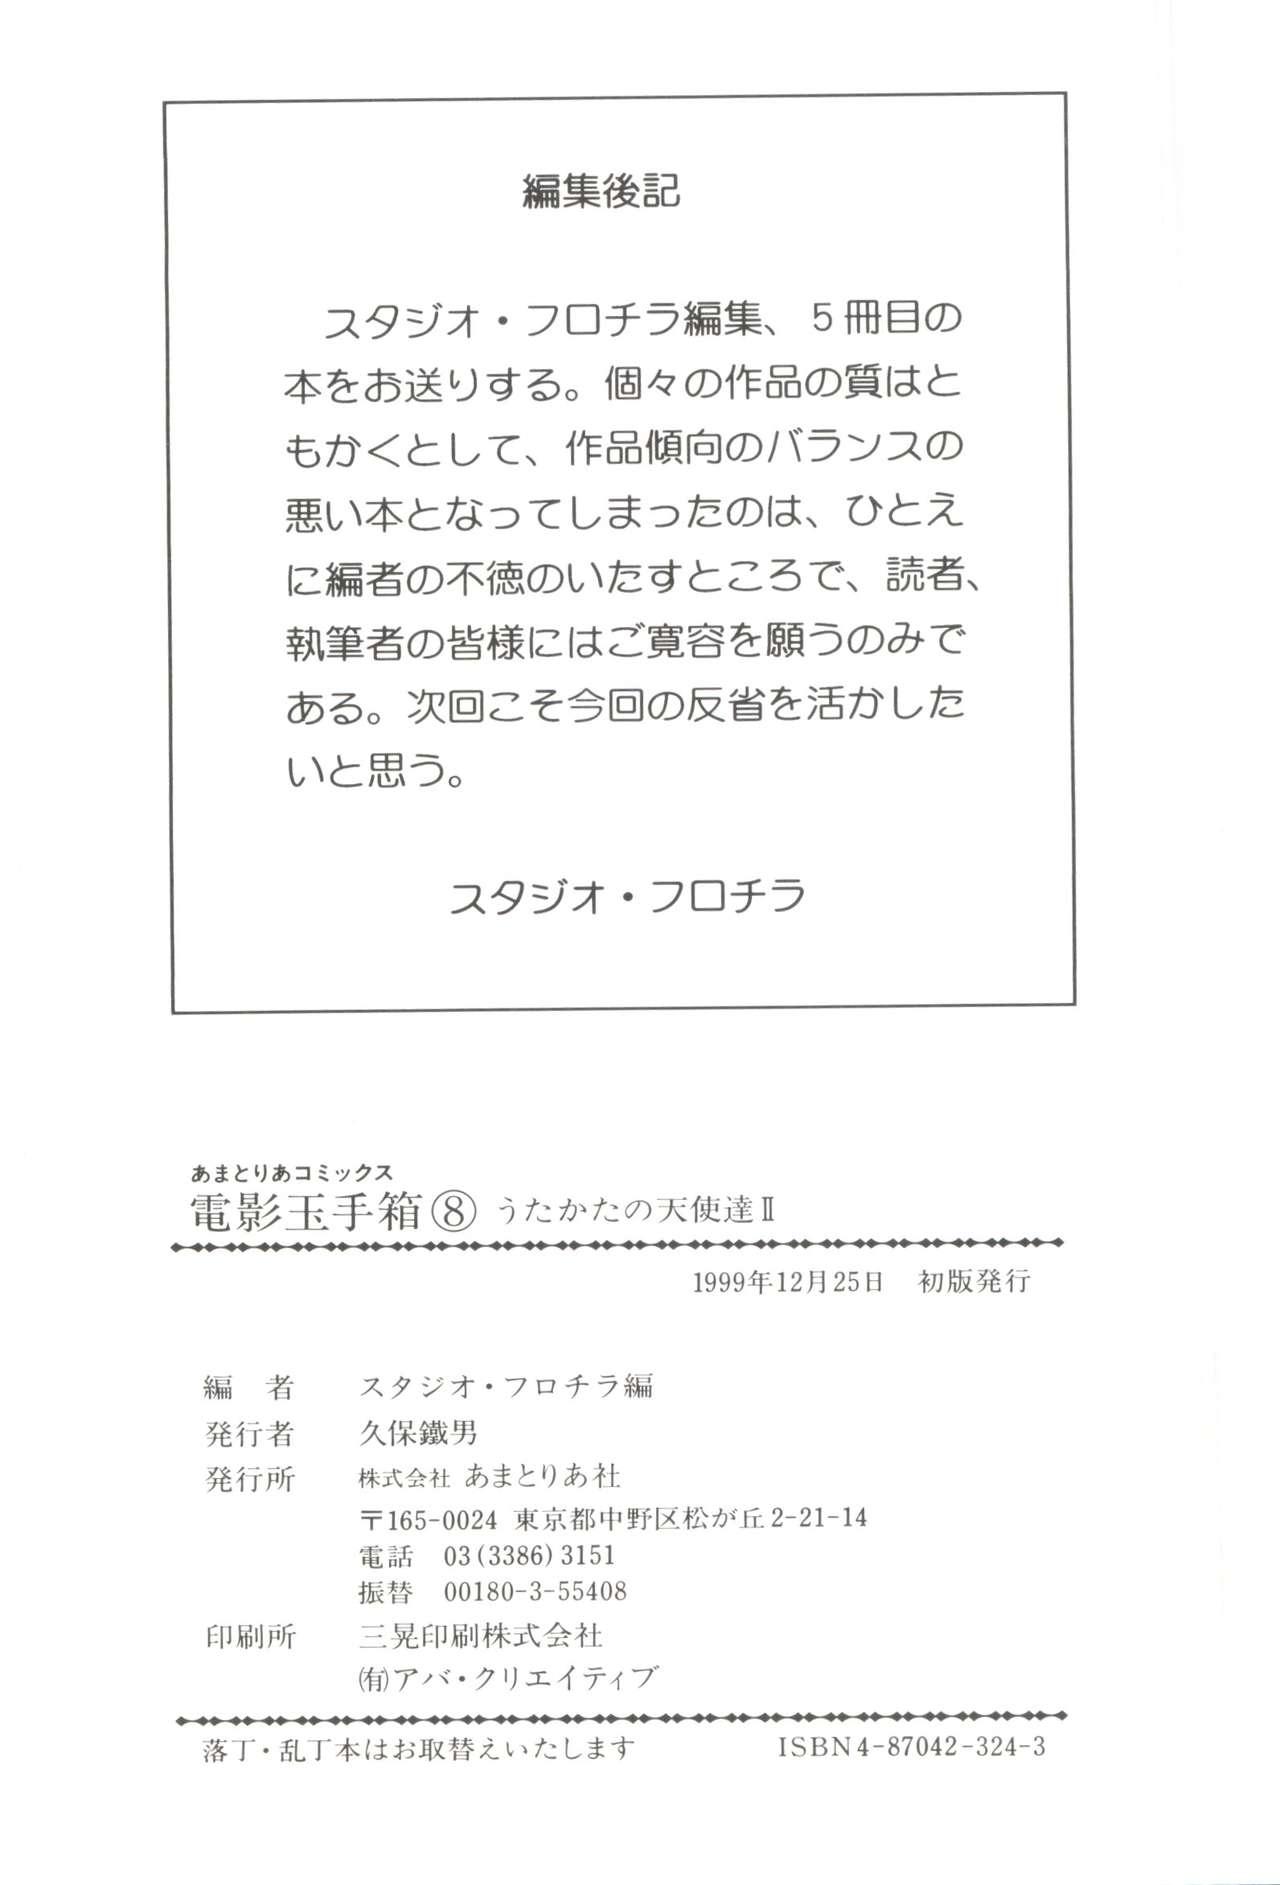 Porn Blow Jobs [Anthology] Denei Tamatebako 8 - Utakata no Tenshi-tachi II (Various) - Cardcaptor sakura Pretty sammy Digimon adventure Fun fun pharmacy Step Mom - Page 146